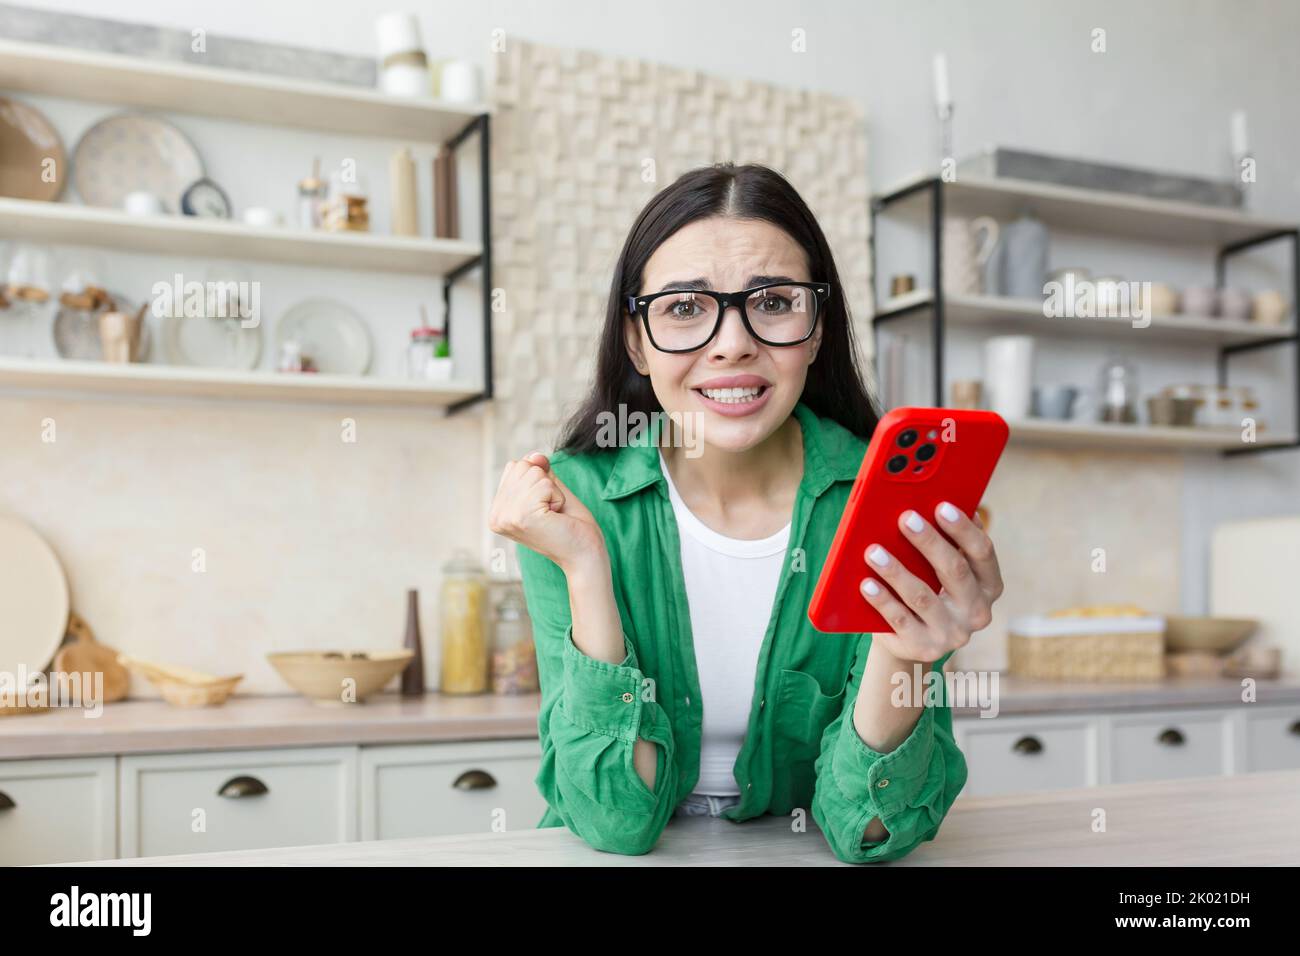 Giovane donna nervosa in occhiali con un telefono rosso e in attesa di una chiamata o messaggio importante. A casa in cucina, guardando la macchina fotografica, preoccupato. Foto Stock